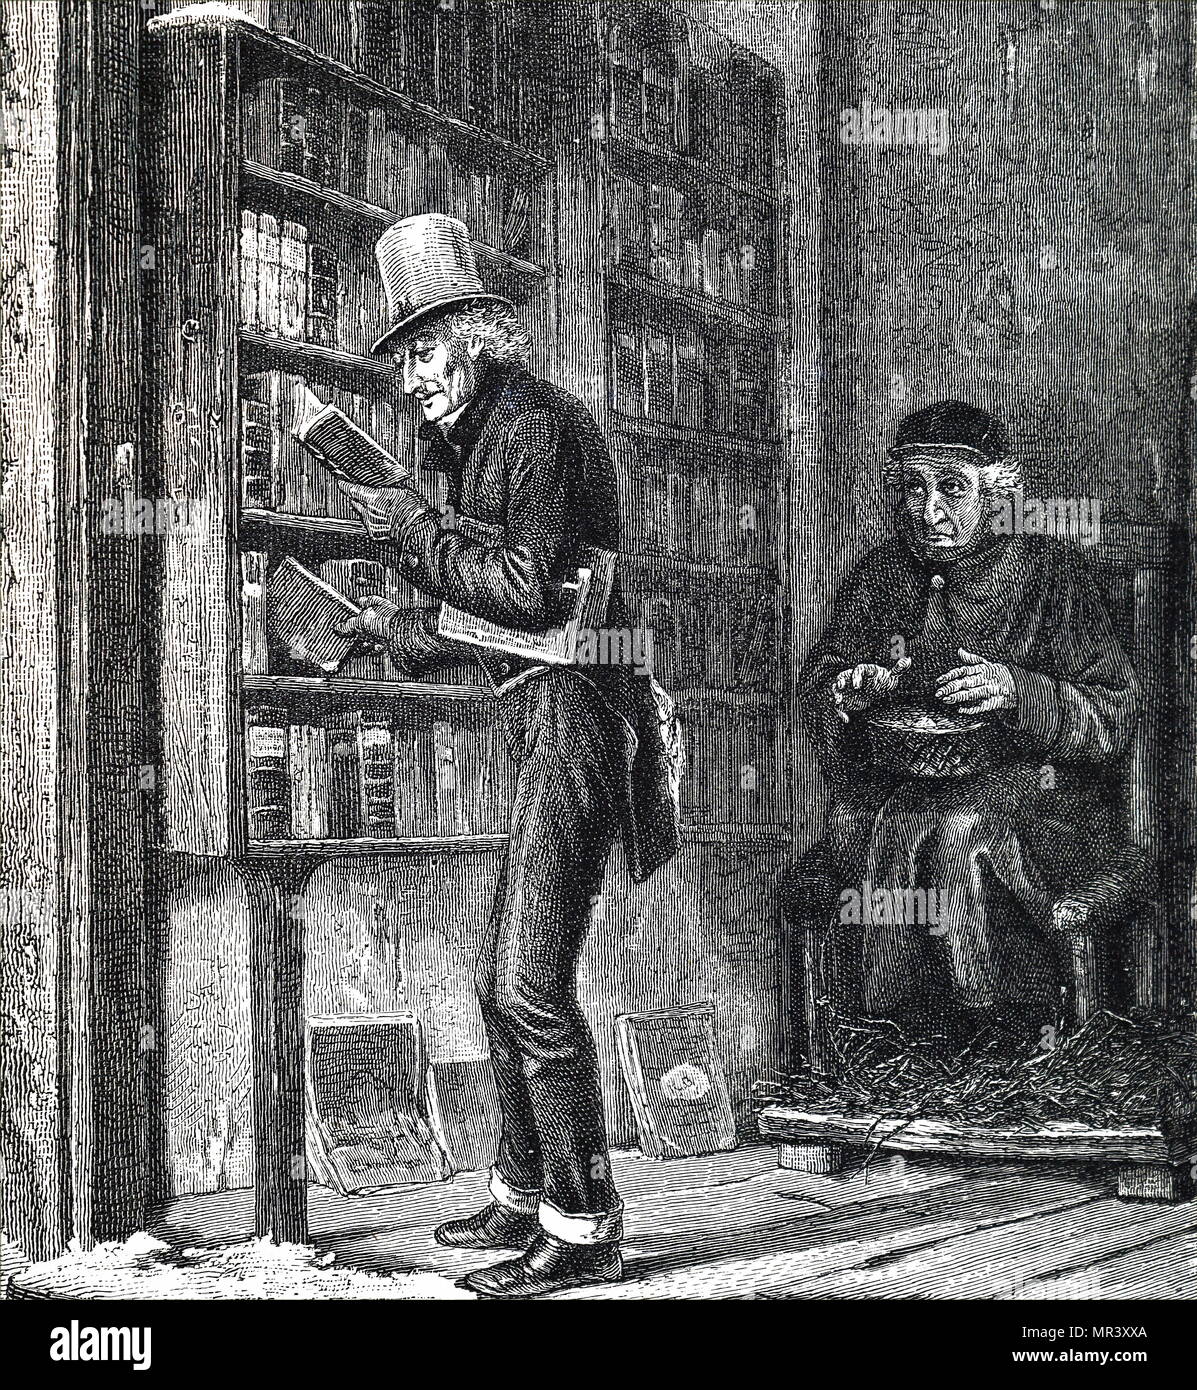 Radierung mit der Darstellung eines wohlhabenden Mannes in einer Buchhandlung stöbern. Vom 19. Jahrhundert Stockfoto